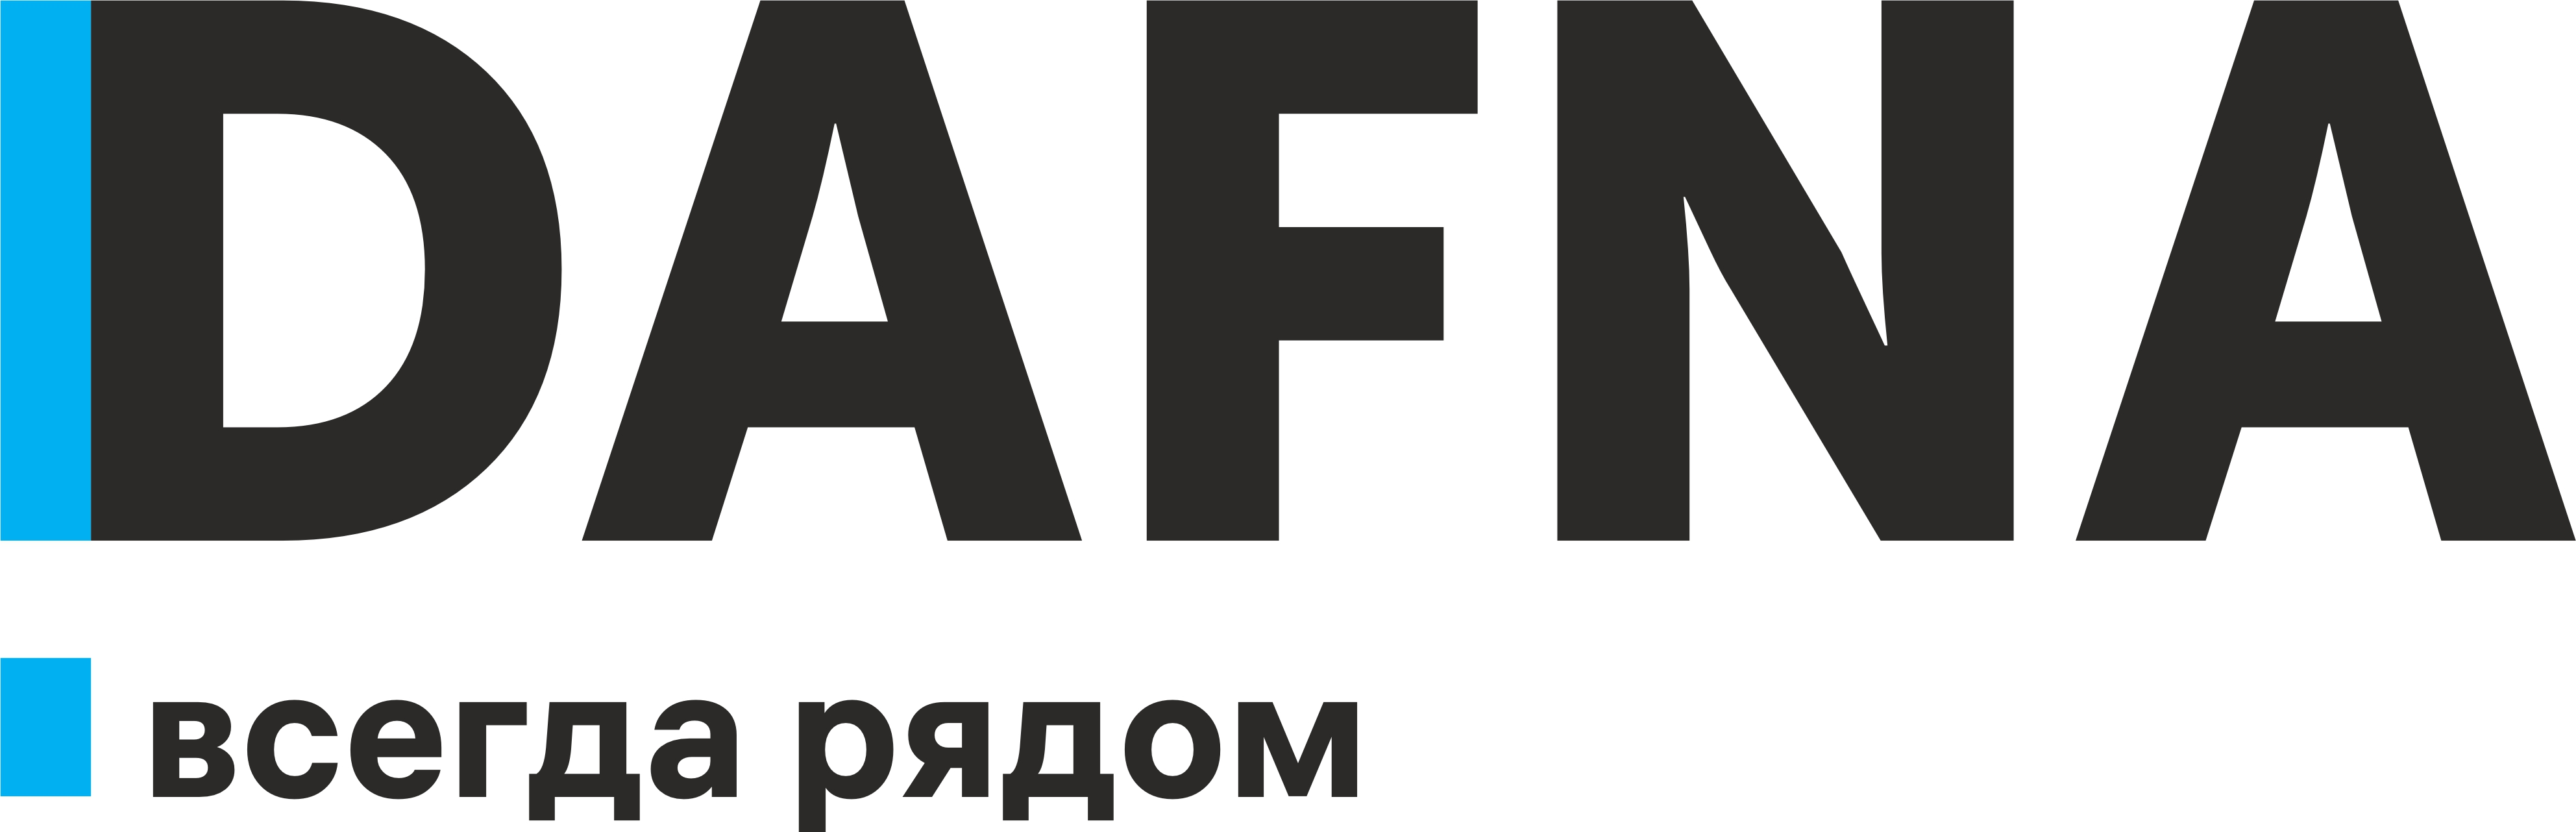 DAFNA - мебель для офиса и дома в Узбекистане: филиалы, телефоны, адреса, расположение и контакты на портале Yellow Pages Uzbekistan